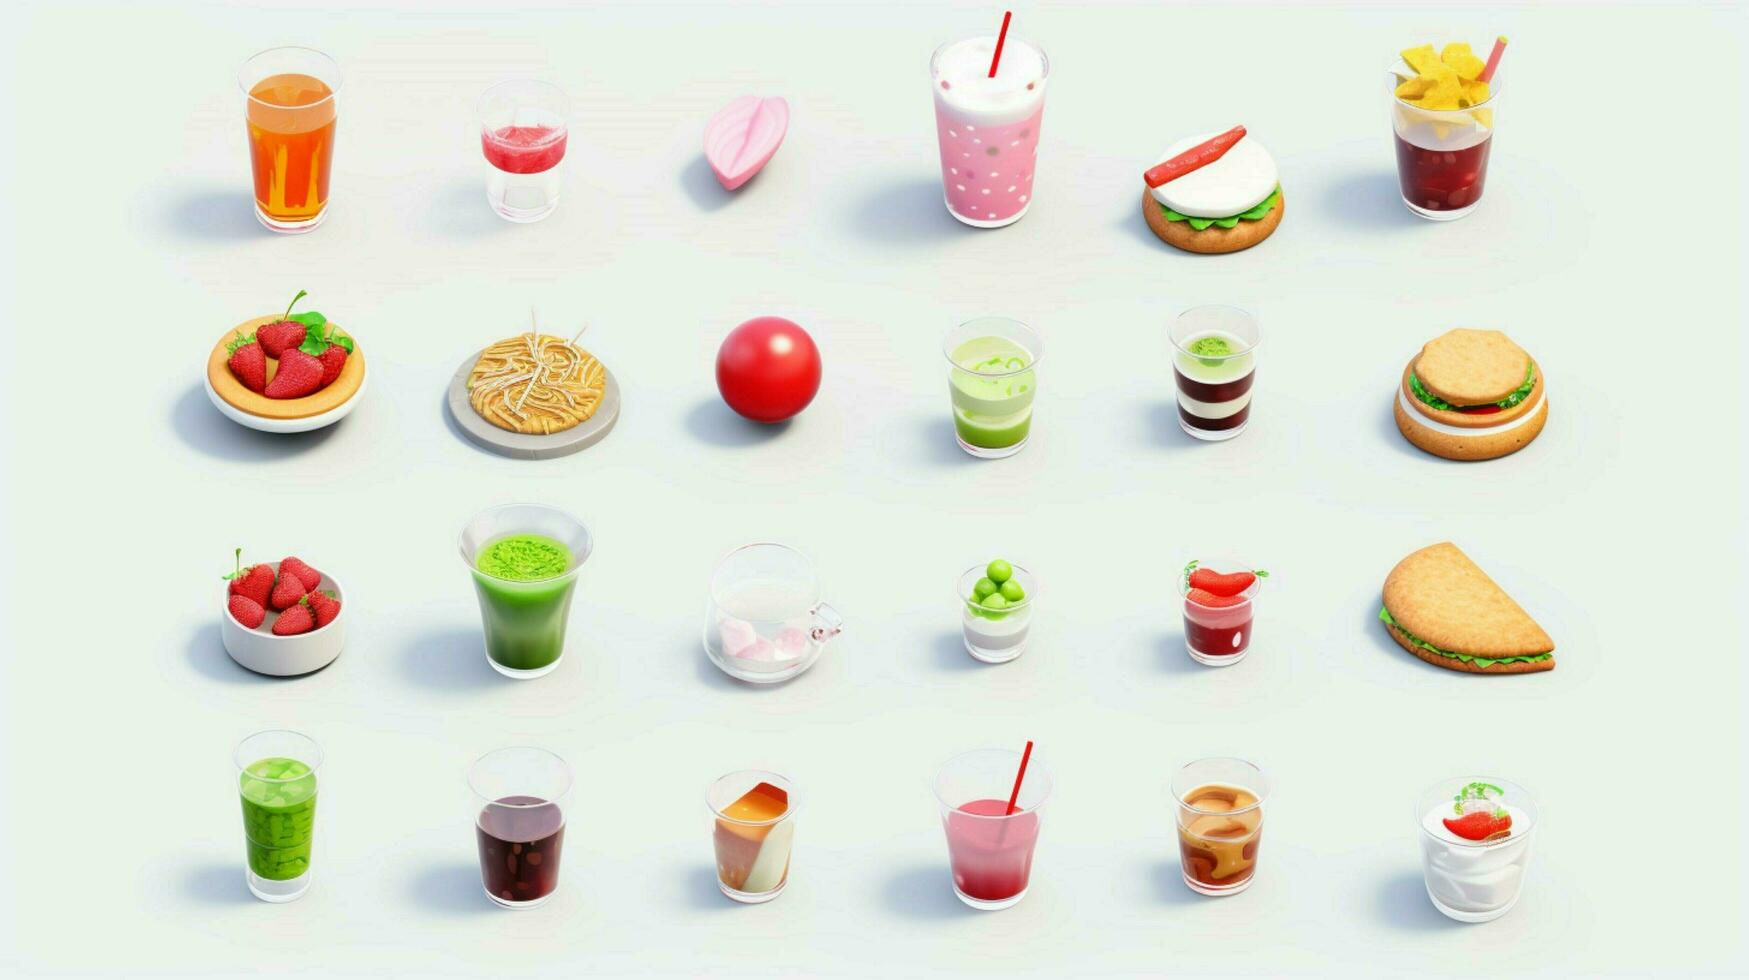 colorato 3d icona imposta di cibo e bevanda indust foto